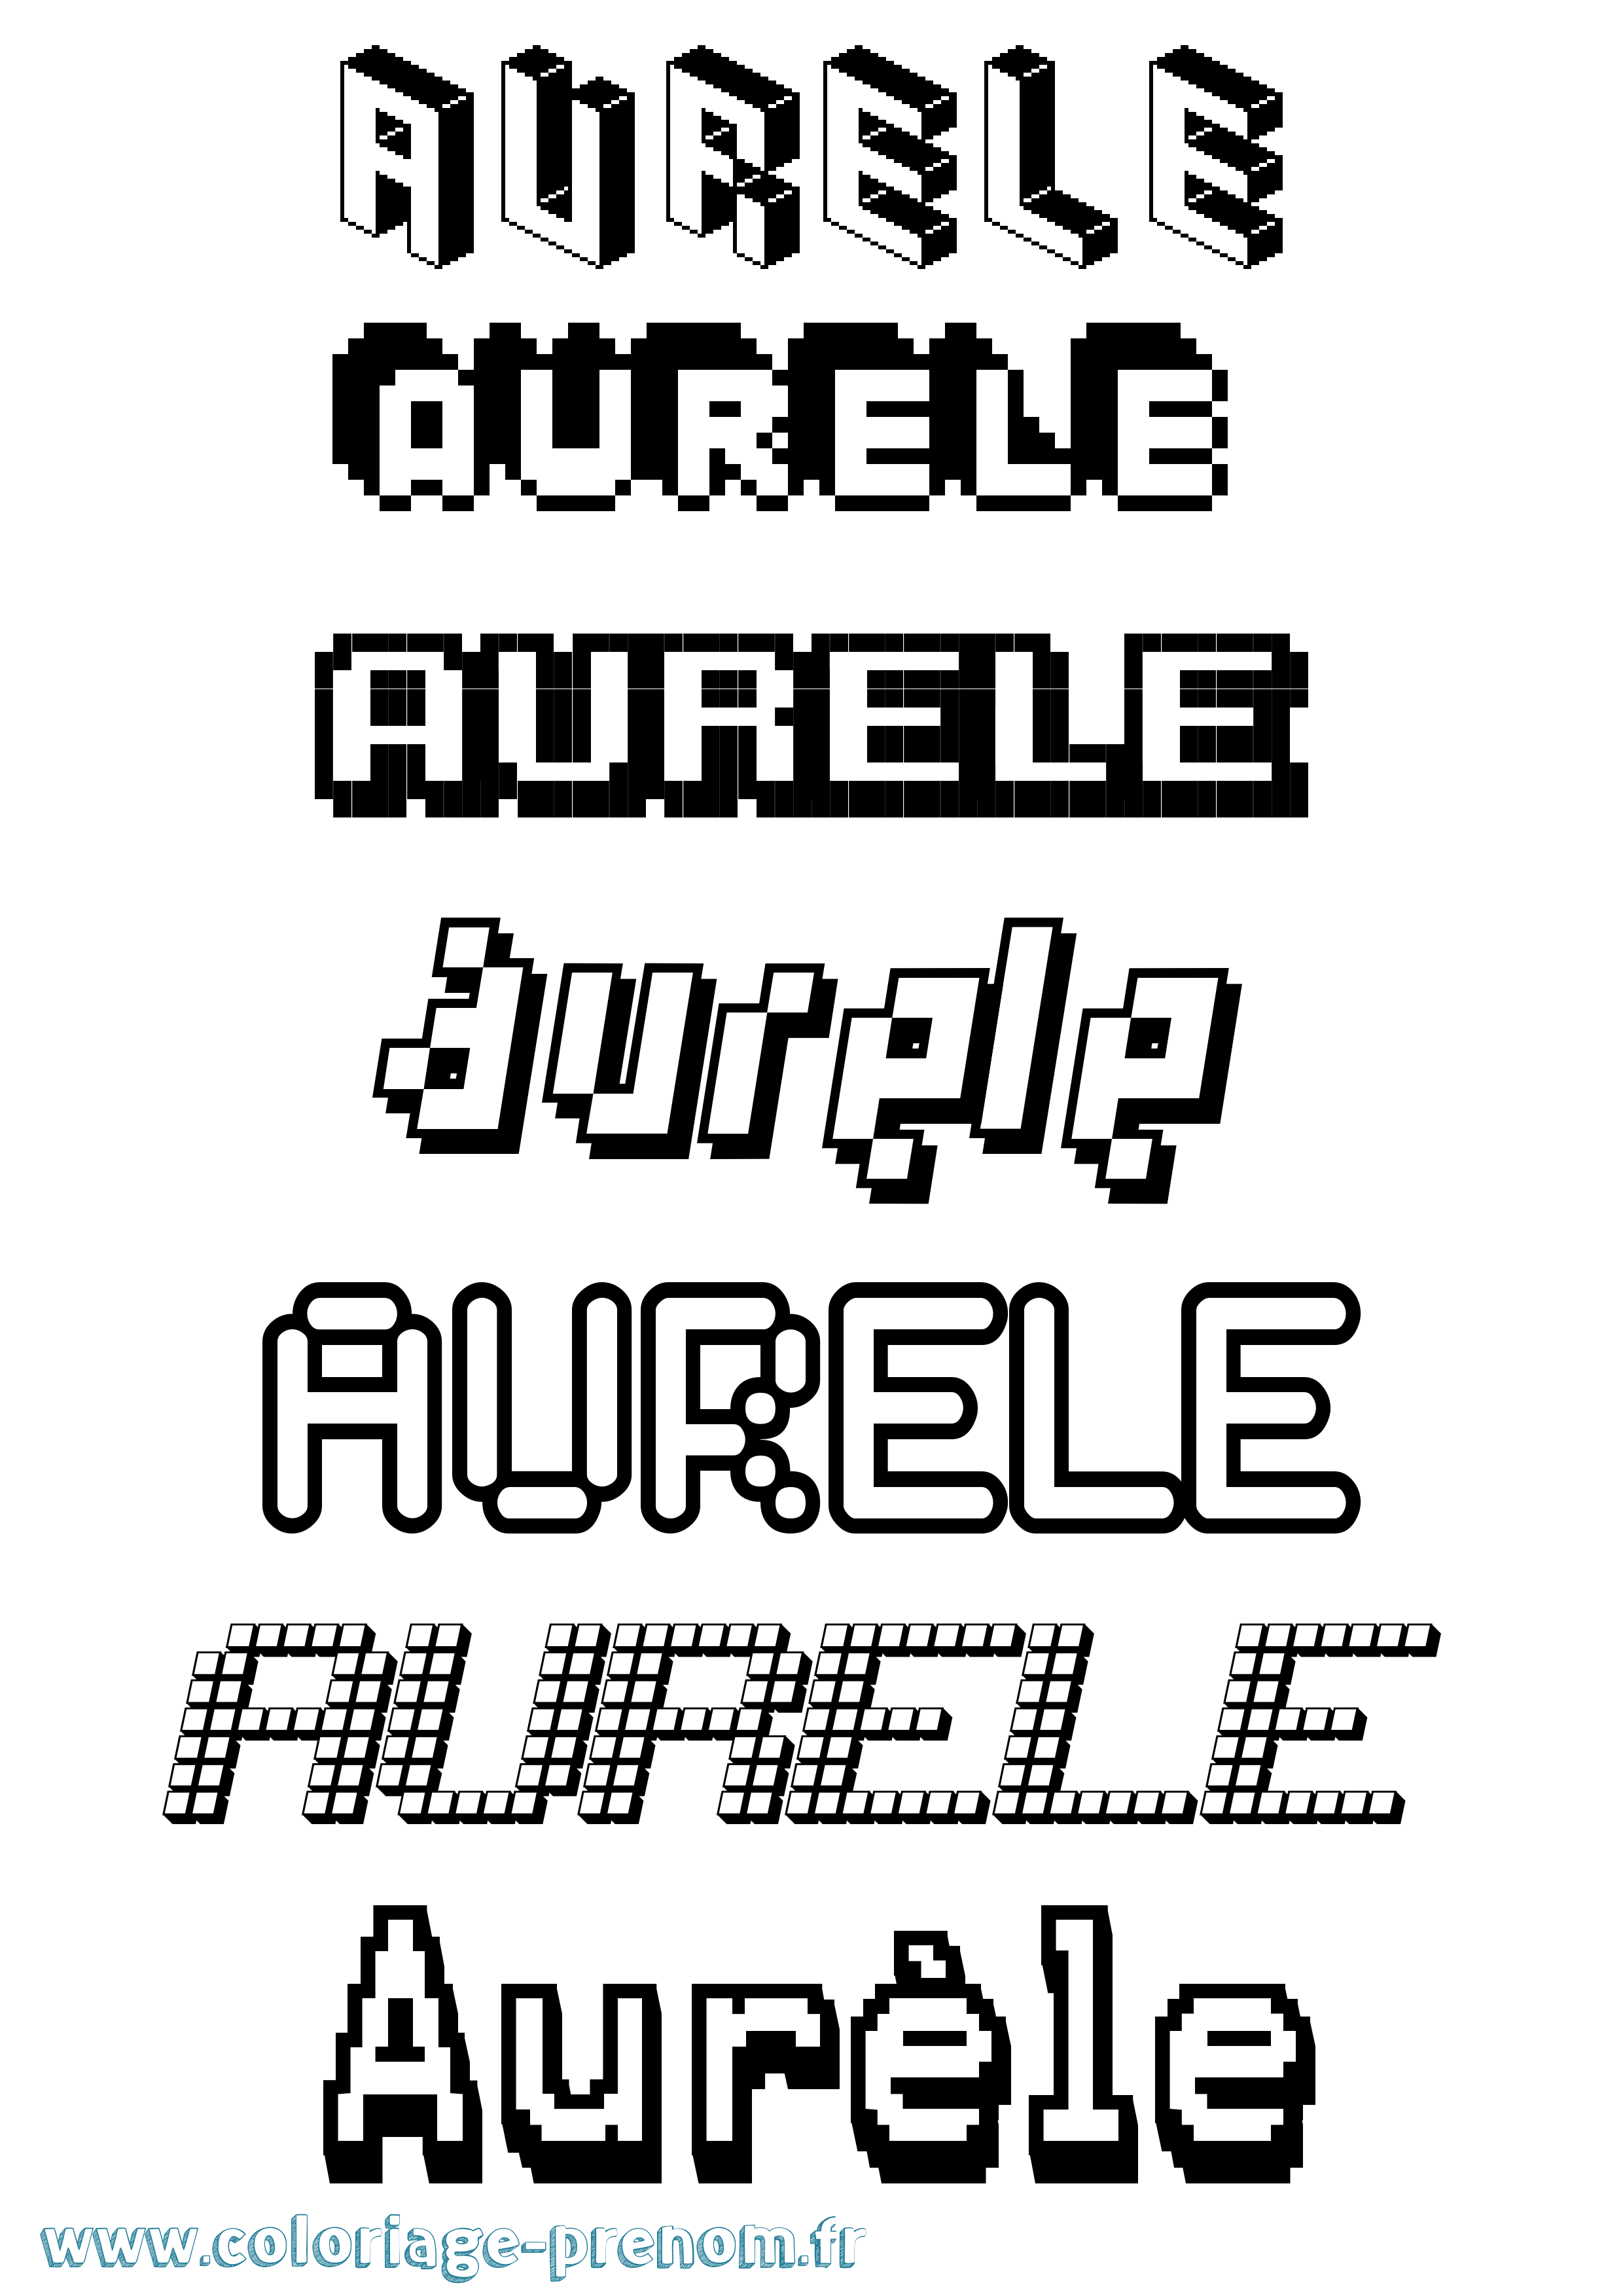 Coloriage prénom Aurèle Pixel